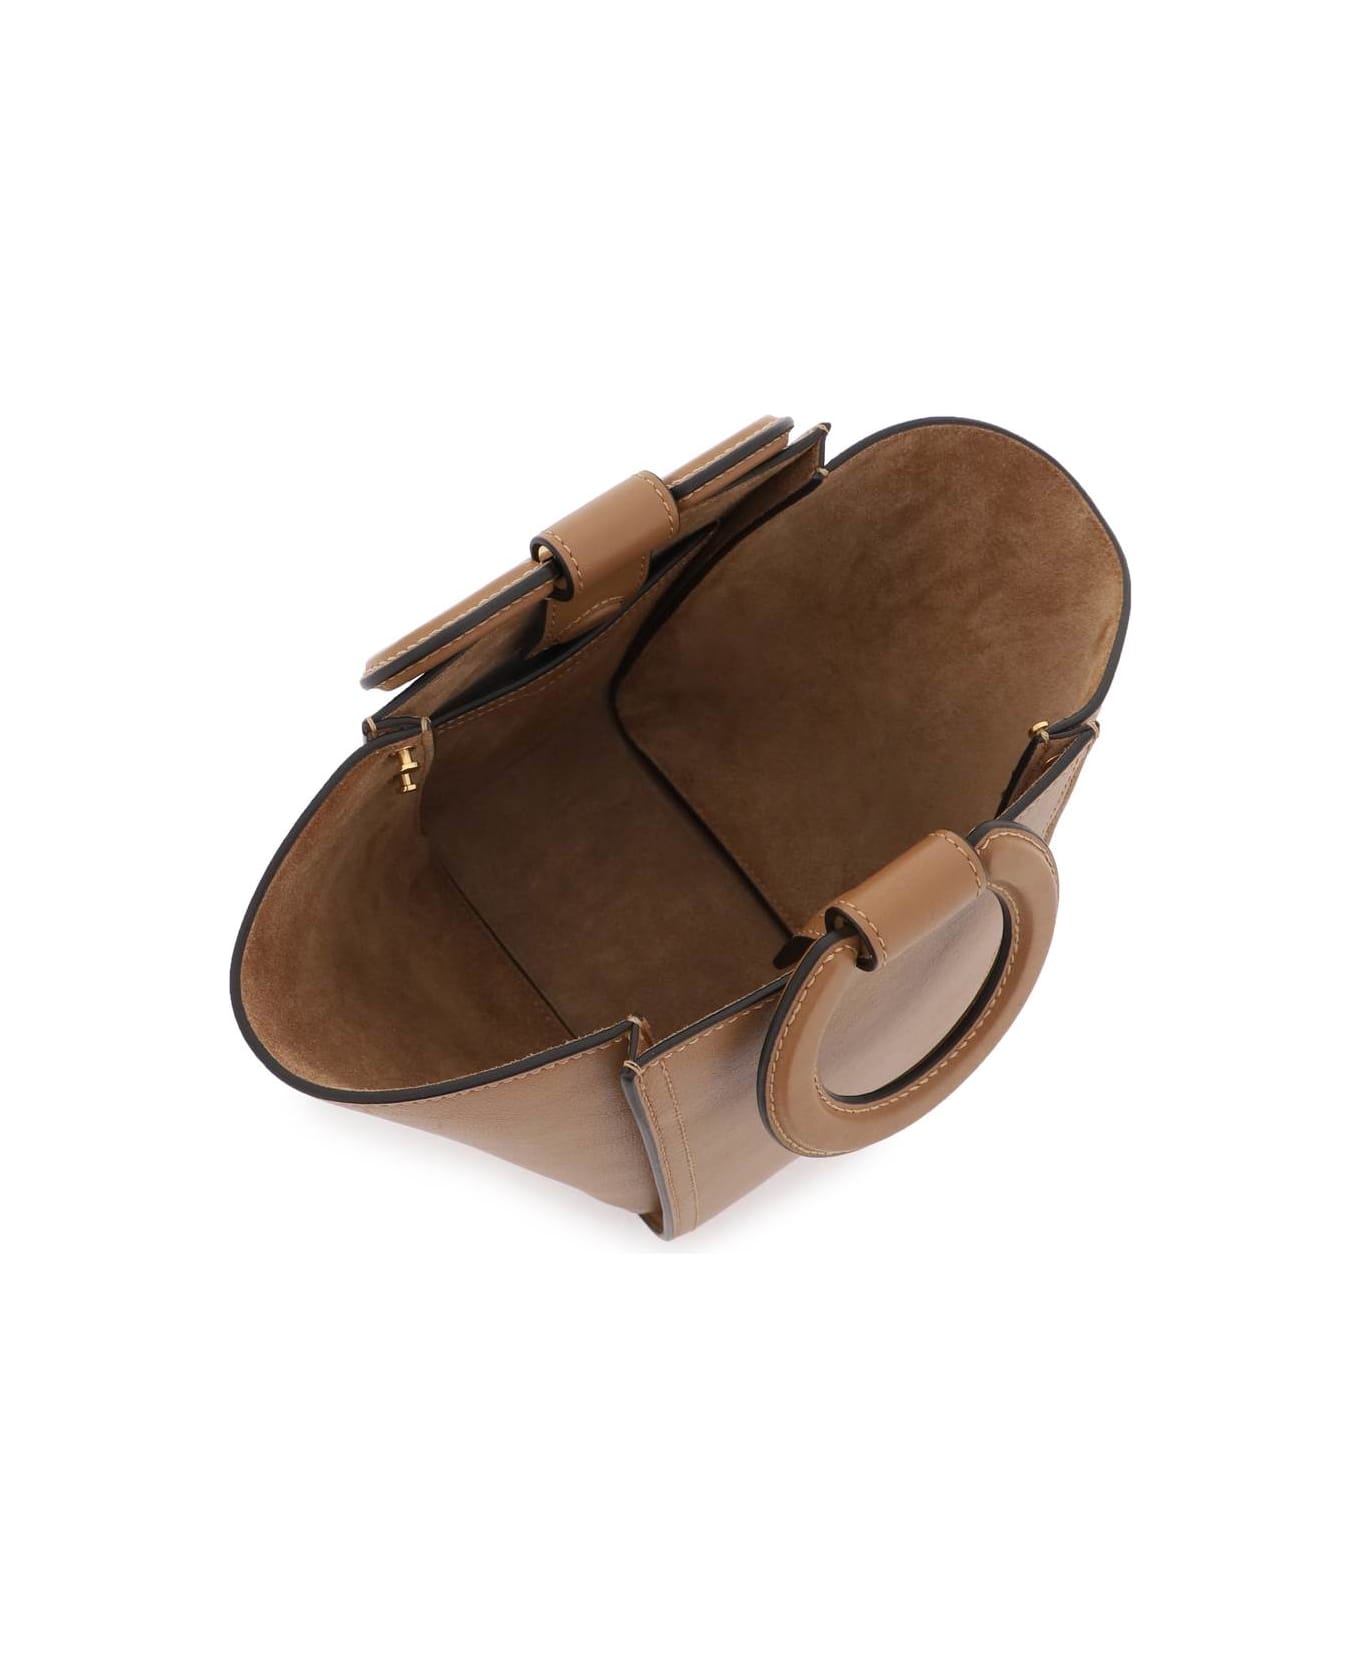 Mulberry 'mini Rider's Top Handle' Bag - TEAK (Brown)